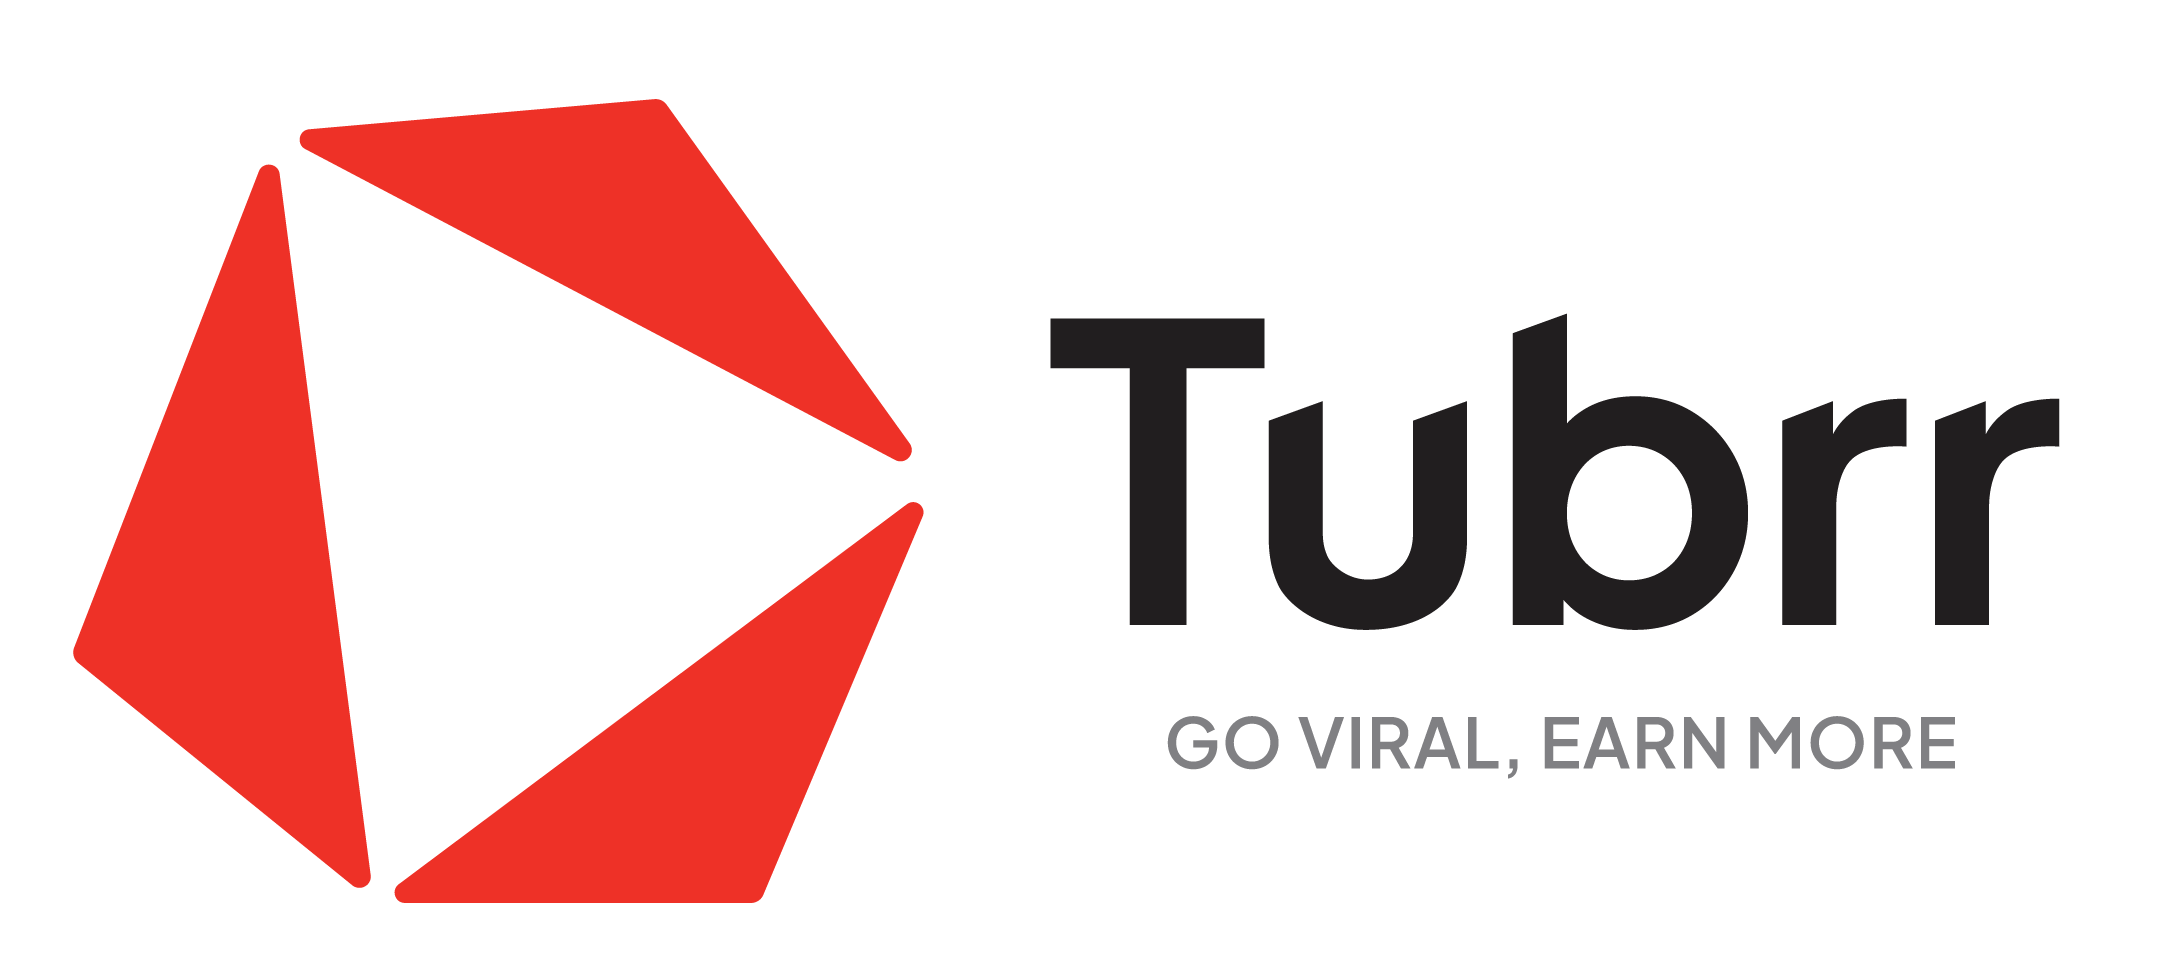 Tubrr Network - một tron những đơn vị cung cấp dịch vụ phân phối âm nhạc hàng đầu Việt Nam